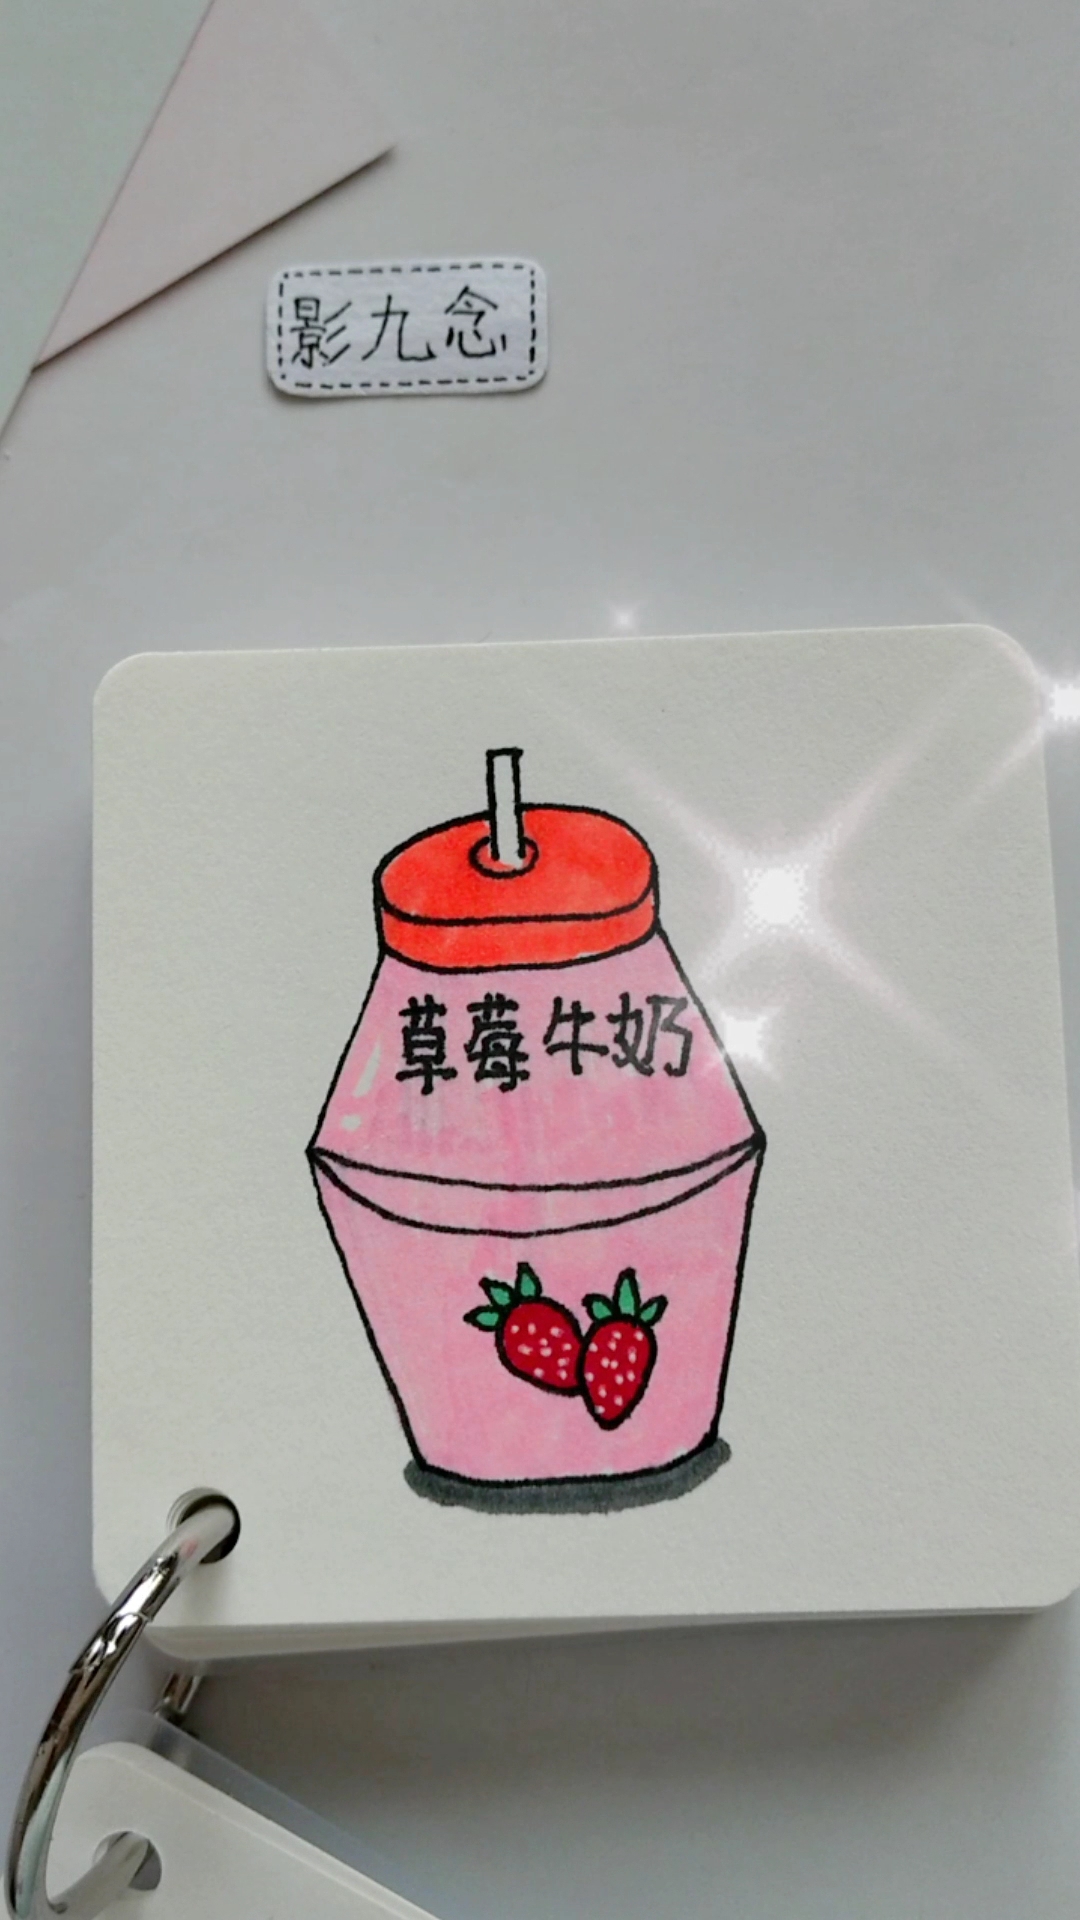 [绘画比拼]画一瓶酸酸甜甜的草莓牛奶,粉粉嫩嫩的太可爱了趴